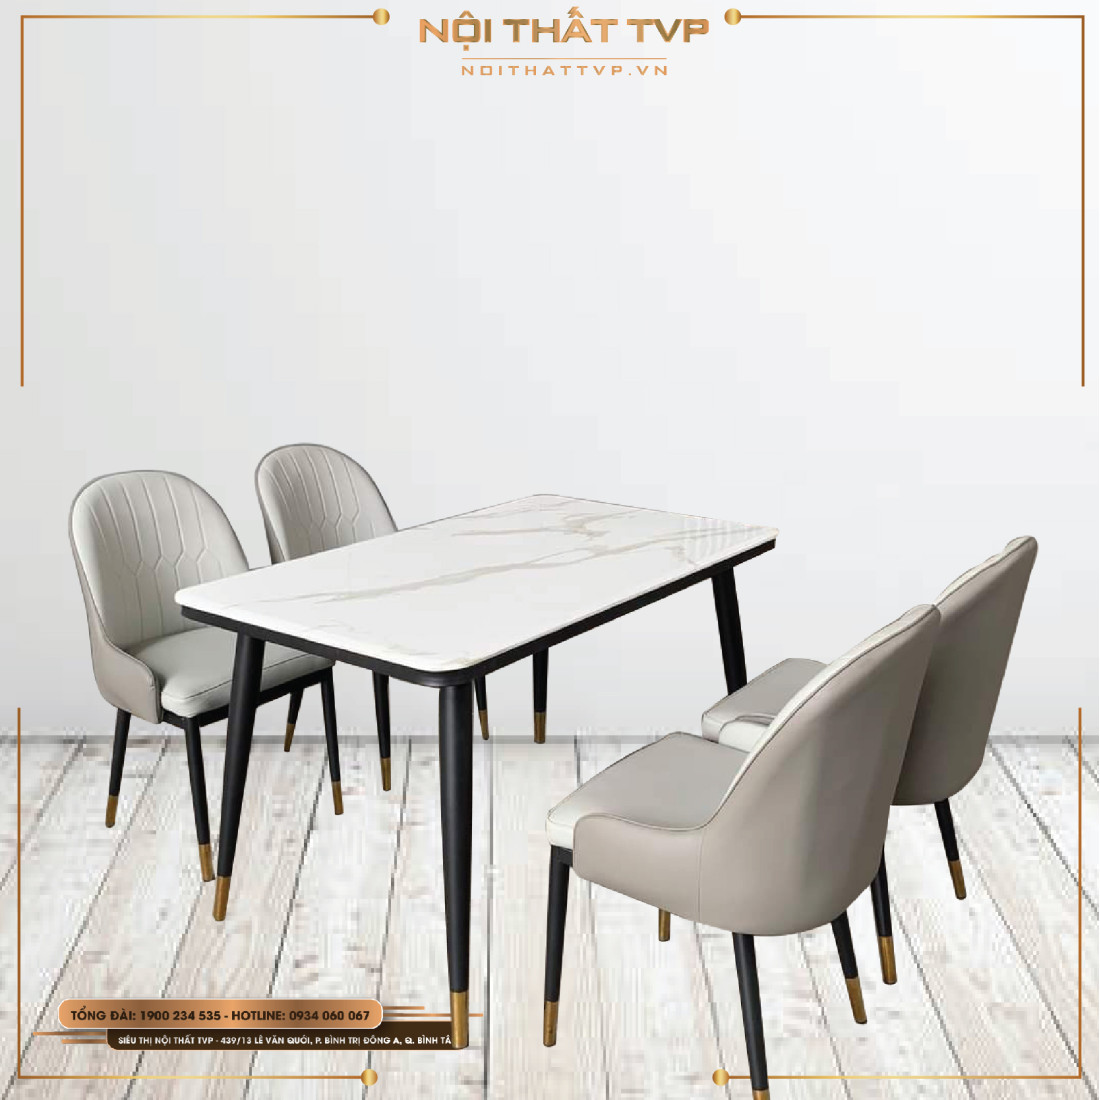 Bàn ăn mặt đá marble 4 ghế là lựa chọn hoàn hảo cho những không gian nhỏ và sang trọng. Với vẻ đẹp tự nhiên và chất liệu đá cao cấp, sản phẩm này sẽ mang đến cho căn phòng ăn của bạn một sự đẳng cấp và sang trọng đầy tinh tế. Hãy xem hình ảnh liên quan để tận hưởng sự đẳng cấp và tính thẩm mỹ của bàn ăn này.